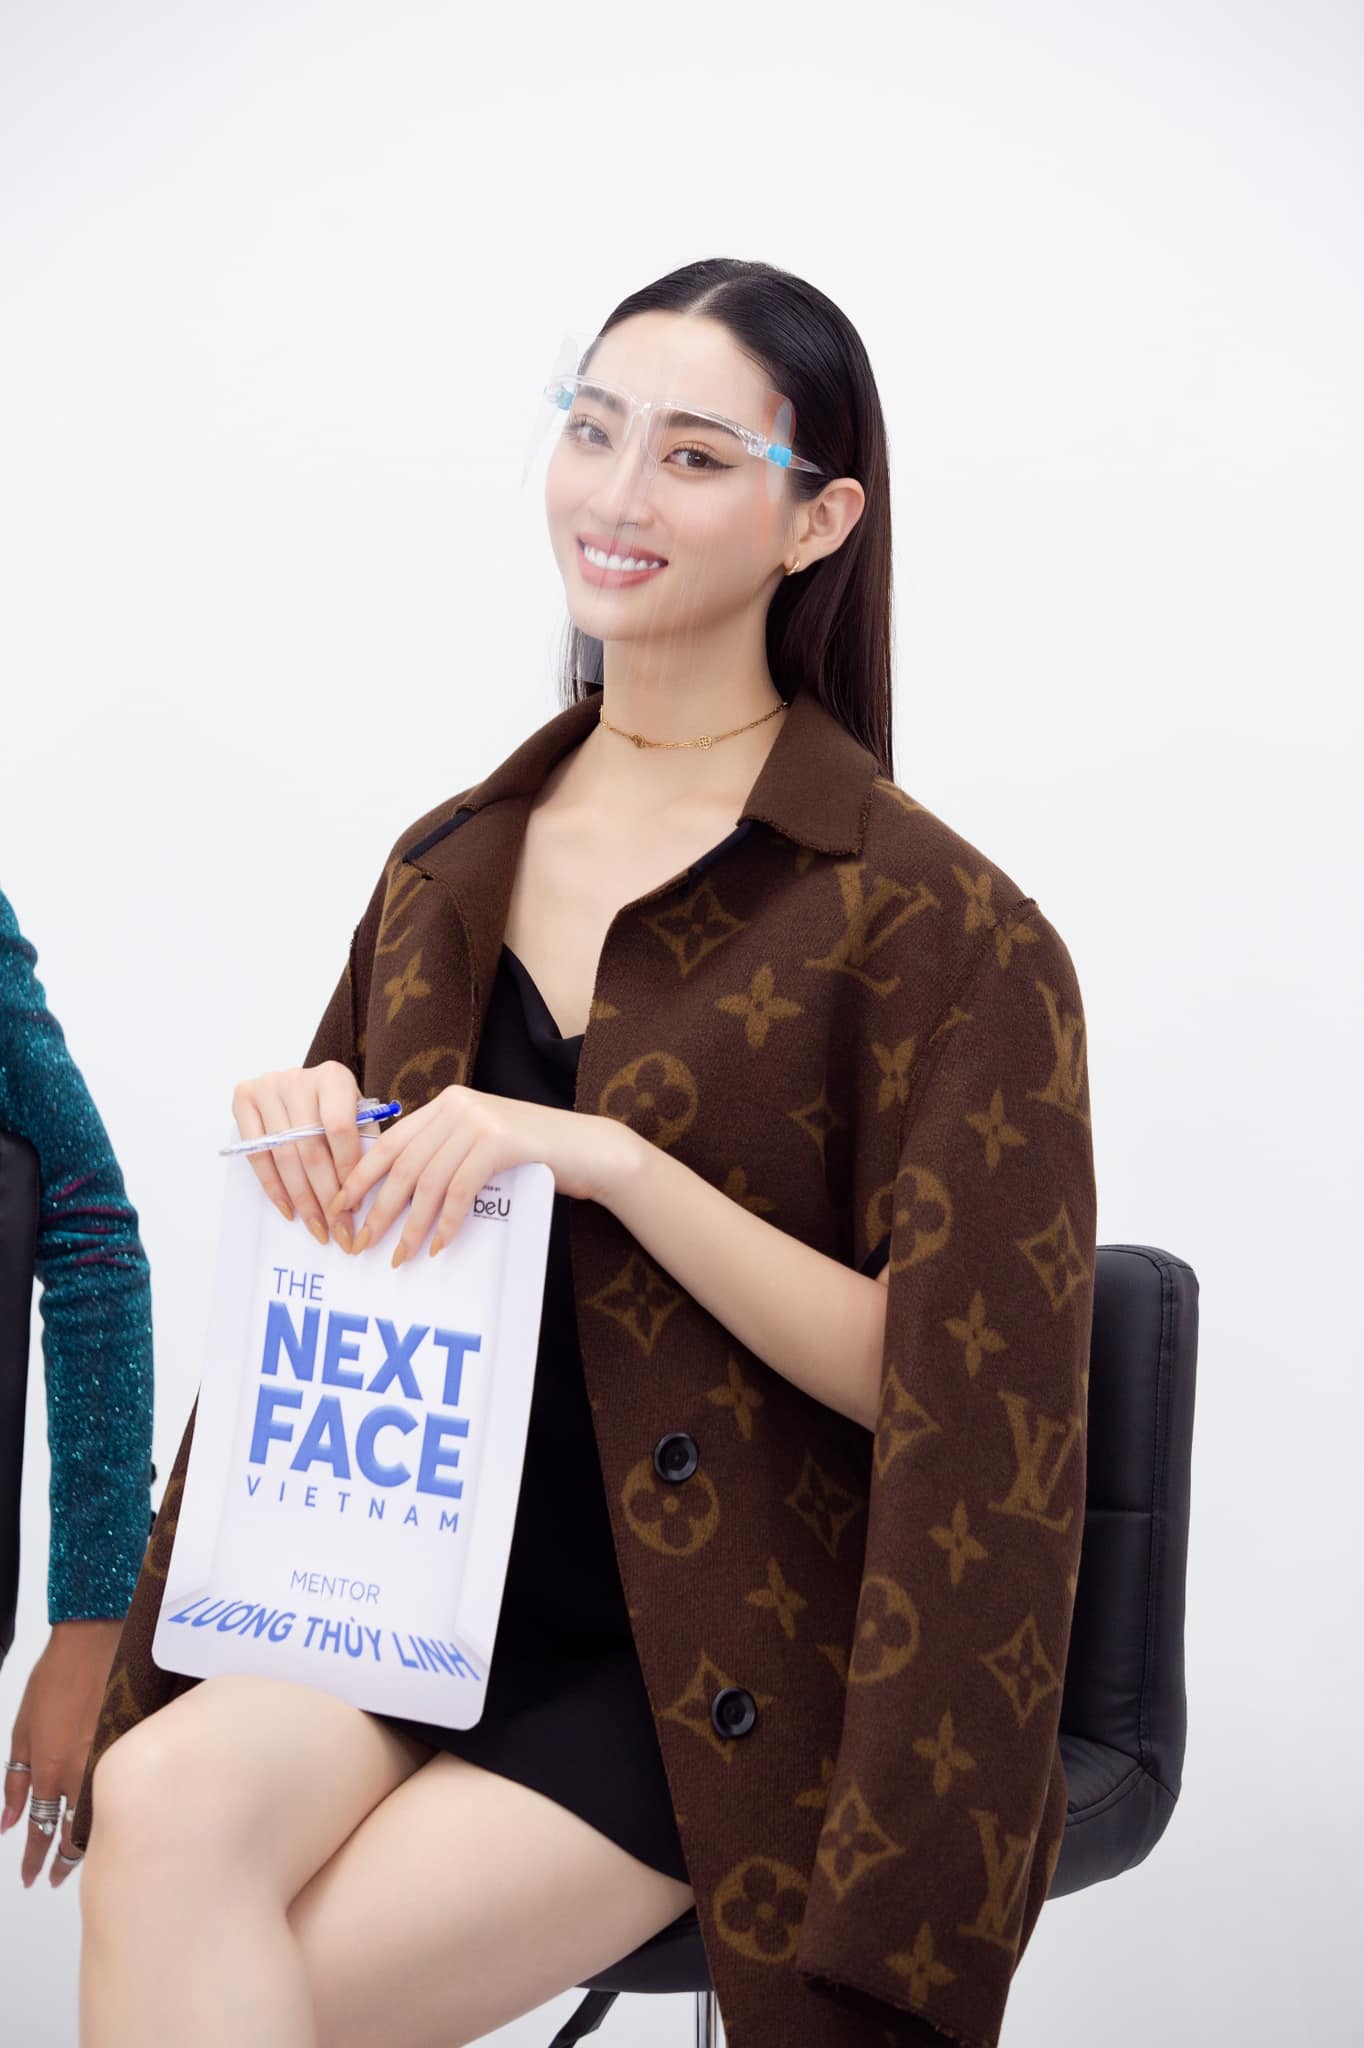 Đây được cho là outfit được cô diện trong tập tiếp theo của chương trình The Next Face Vietnam 2019